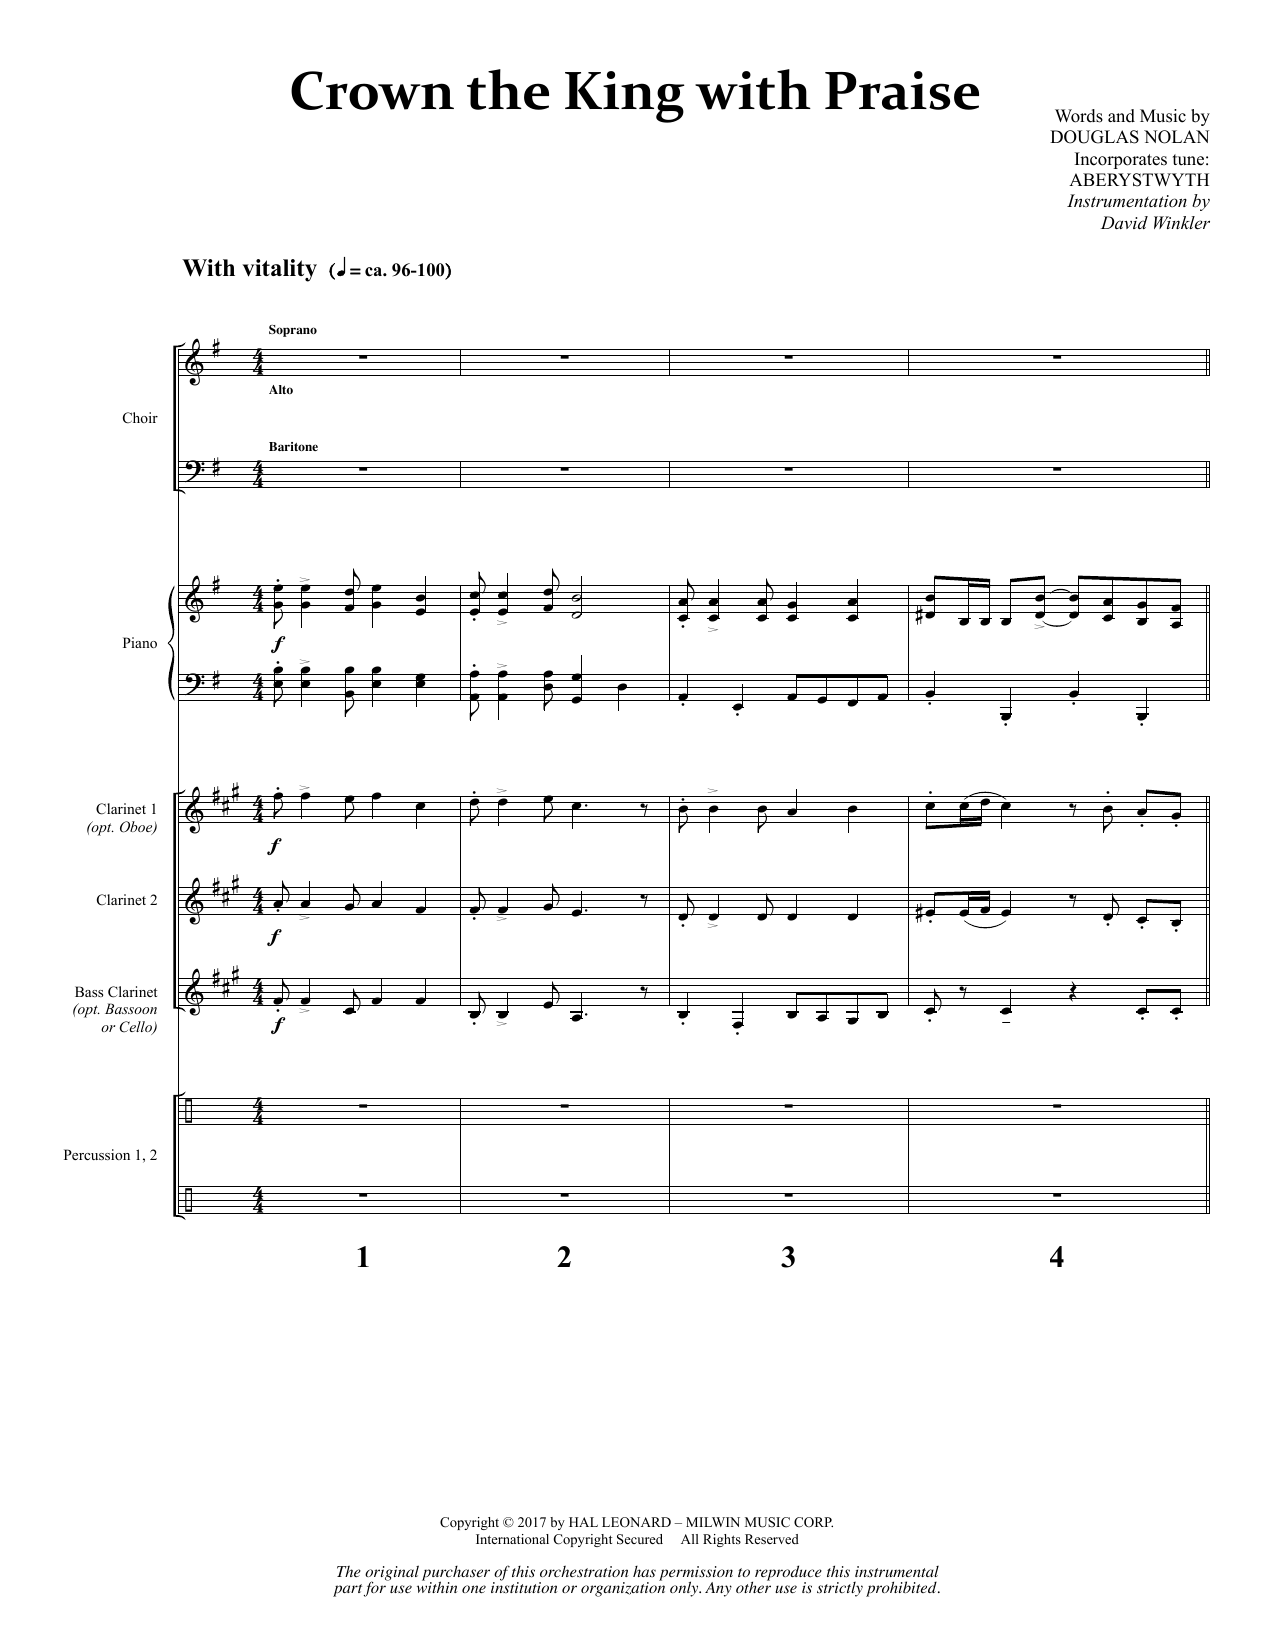 Download Douglas Nolan Crown the King with Praise - Full Score Sheet Music